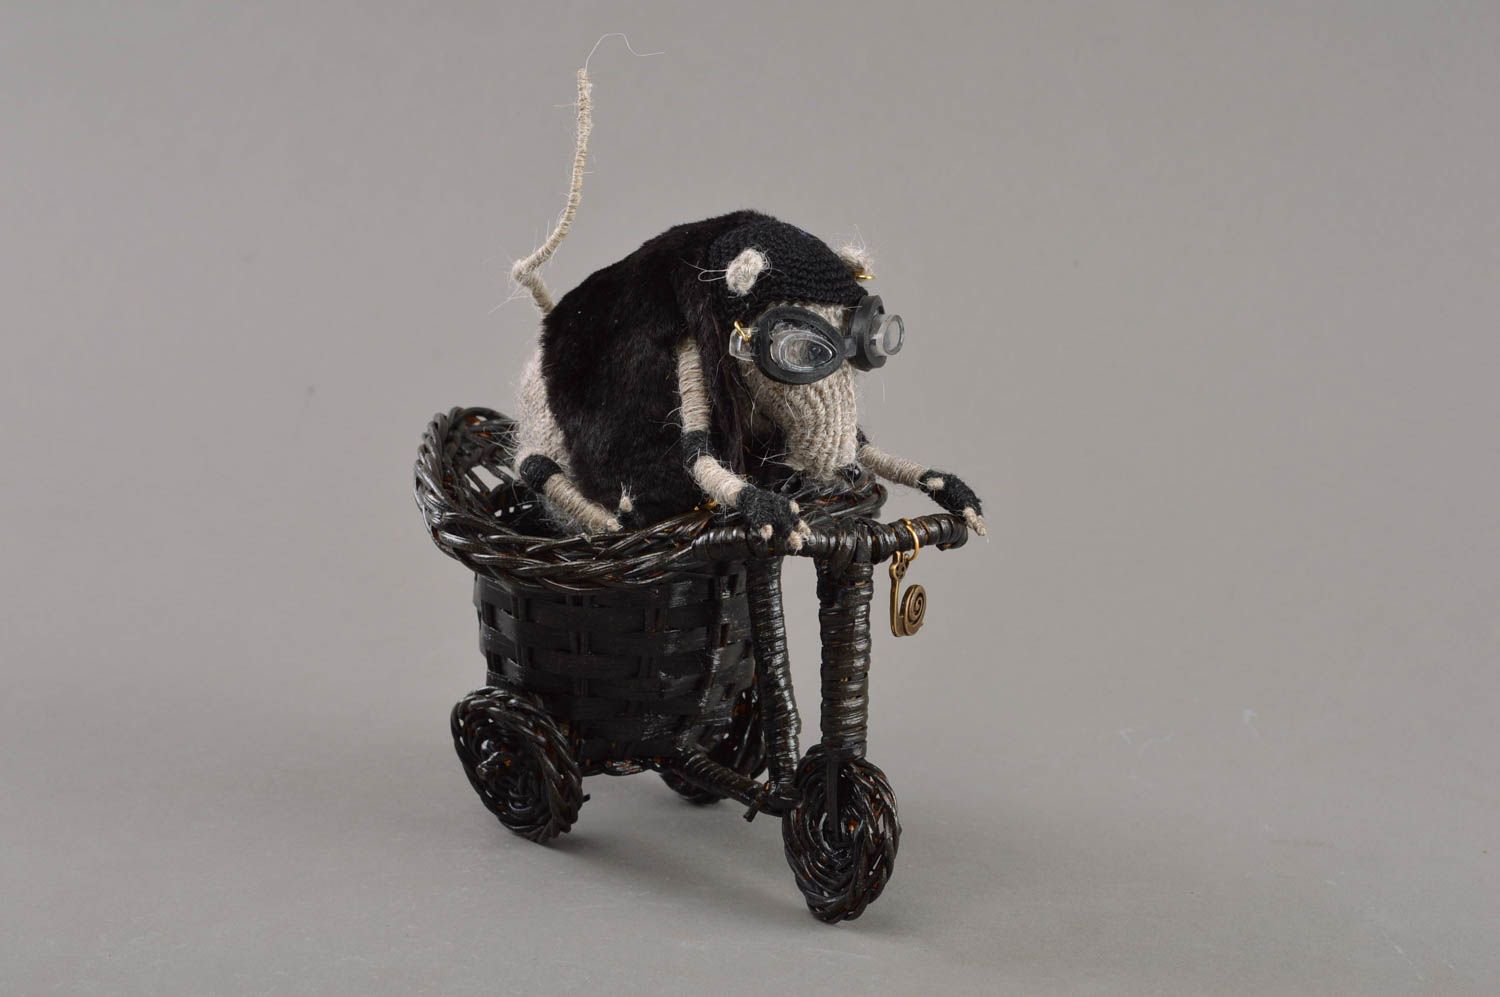 Мягкая вязаная игрушка скульптура крыса байкер на мотоцикле ручная работа фото 1